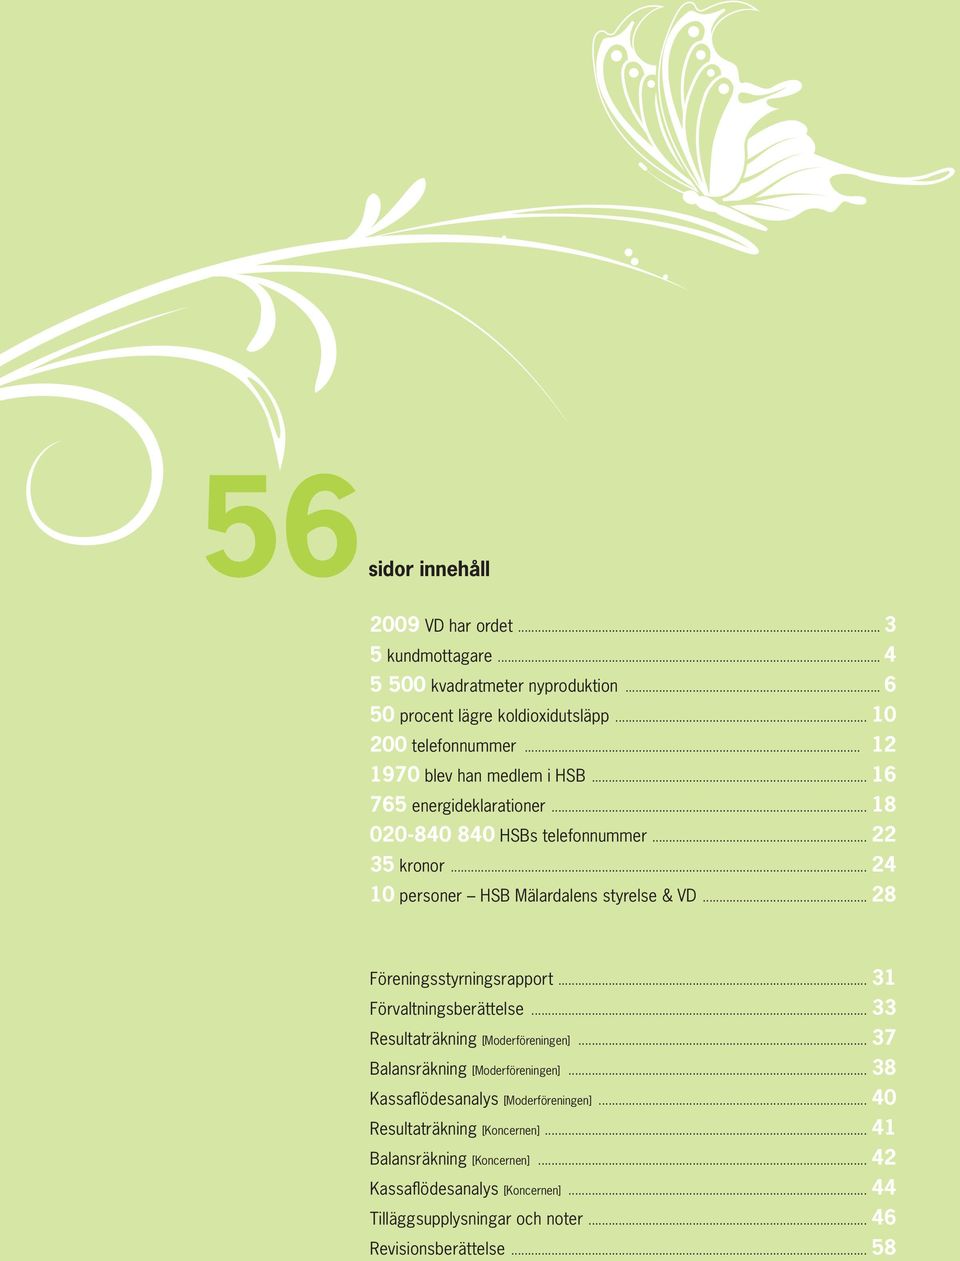 .. 28 Föreningsstyrningsrapport... 31 Förvaltningsberättelse... 33 Resultaträkning [Moderföreningen]... 37 Balansräkning [Moderföreningen].